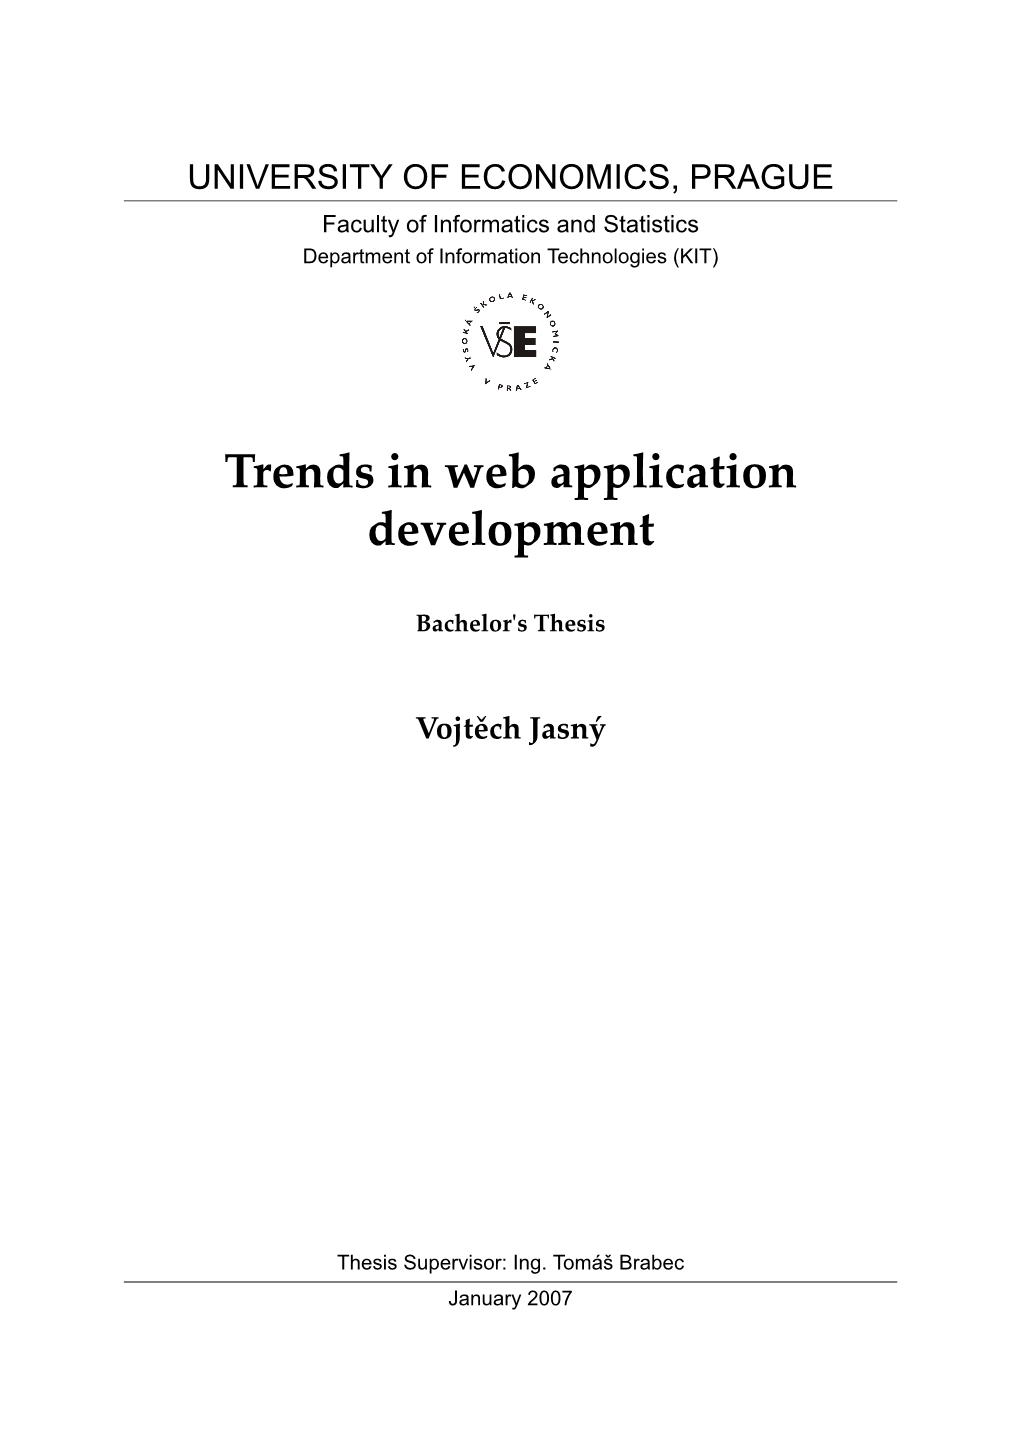 Trends in Web Application Development